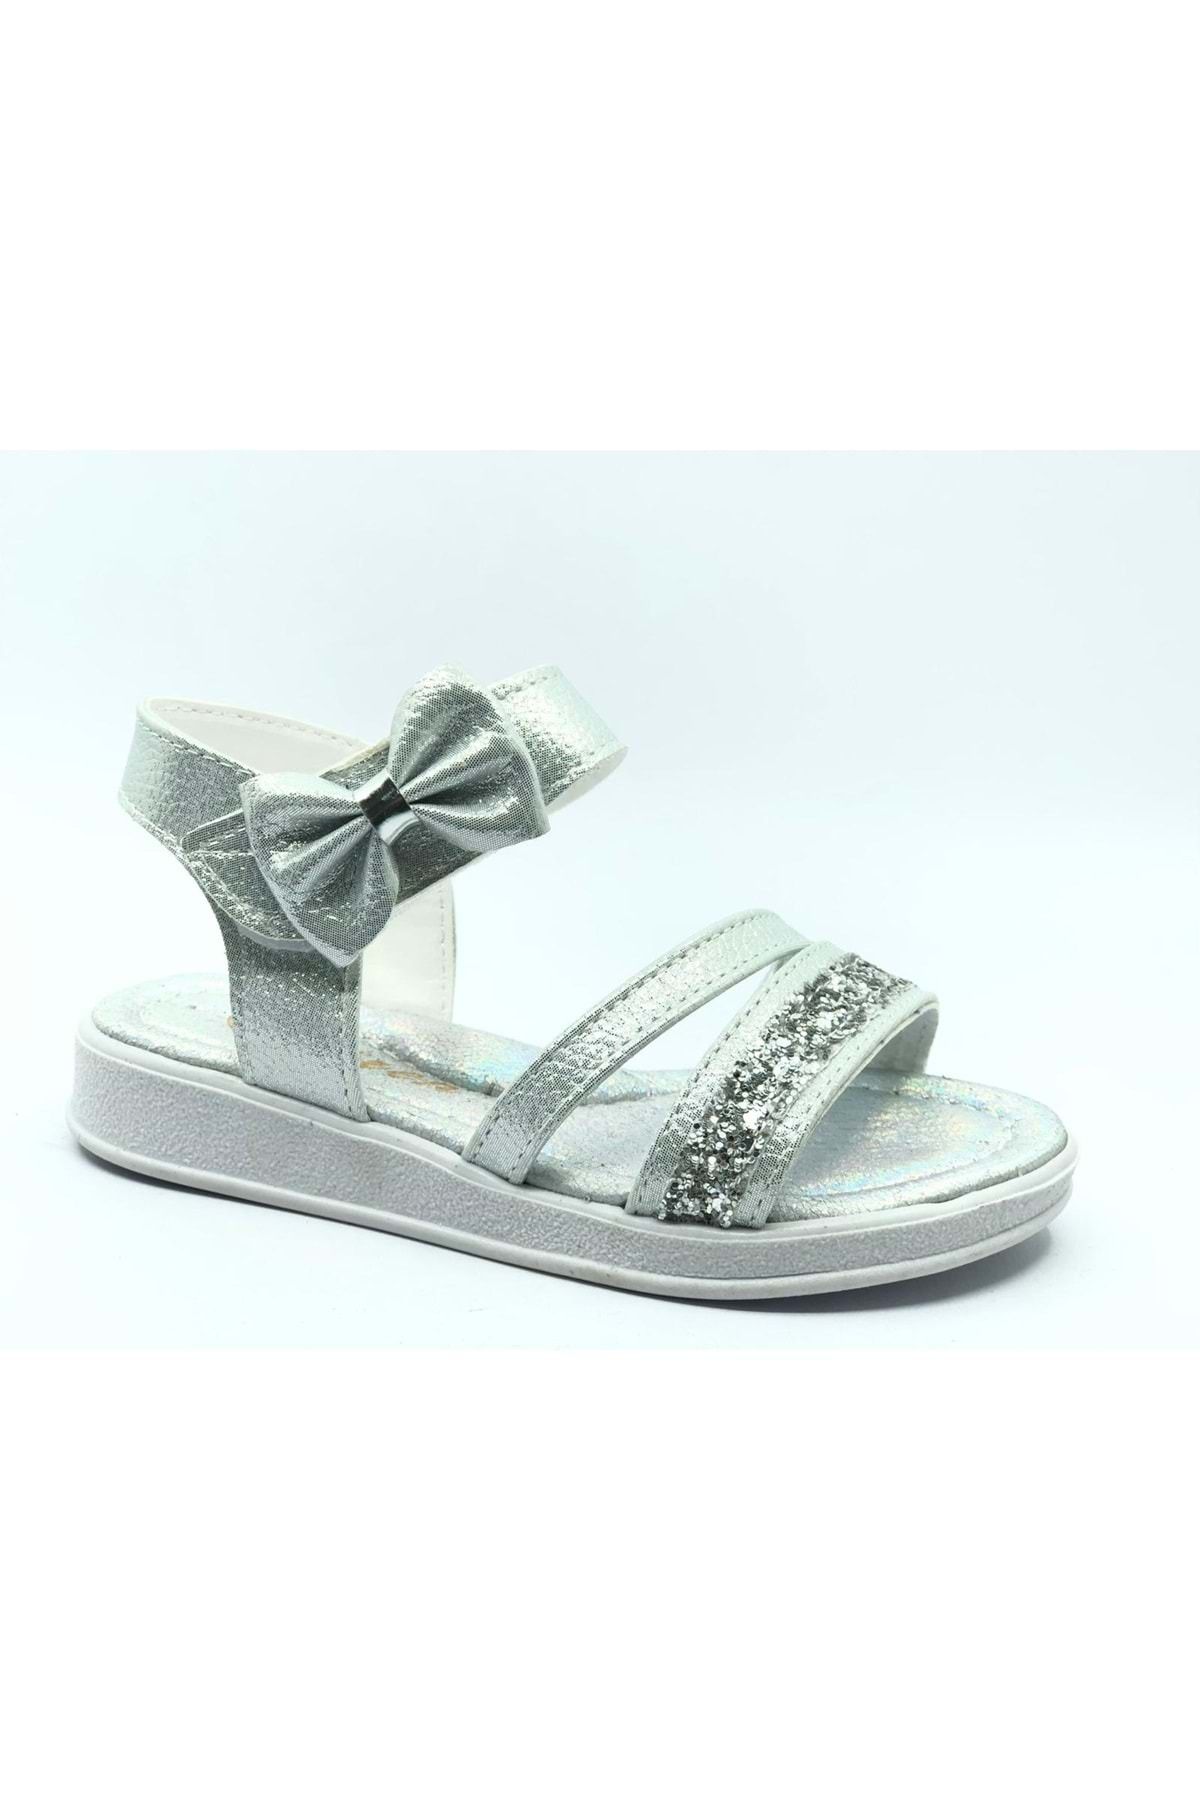 Kids Club Shoes İremsu Fiyonk Taşlı Cırtlı Kız Çocuk Sandalet Gümüş